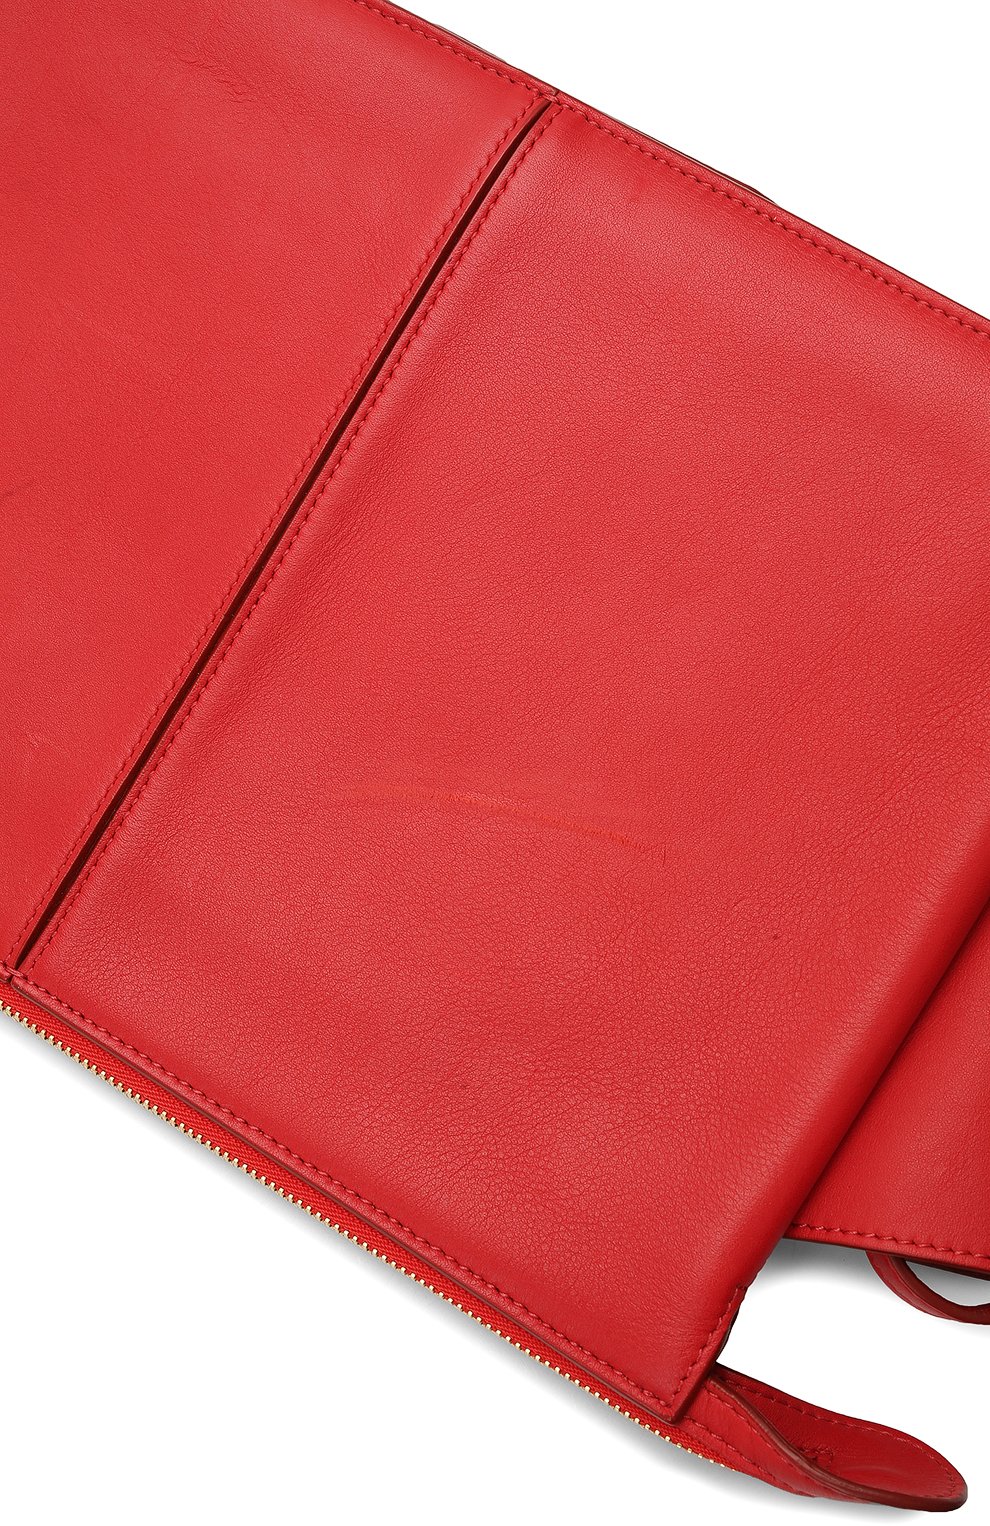 Клатч Tri-Fold | Celine | Красный - 13